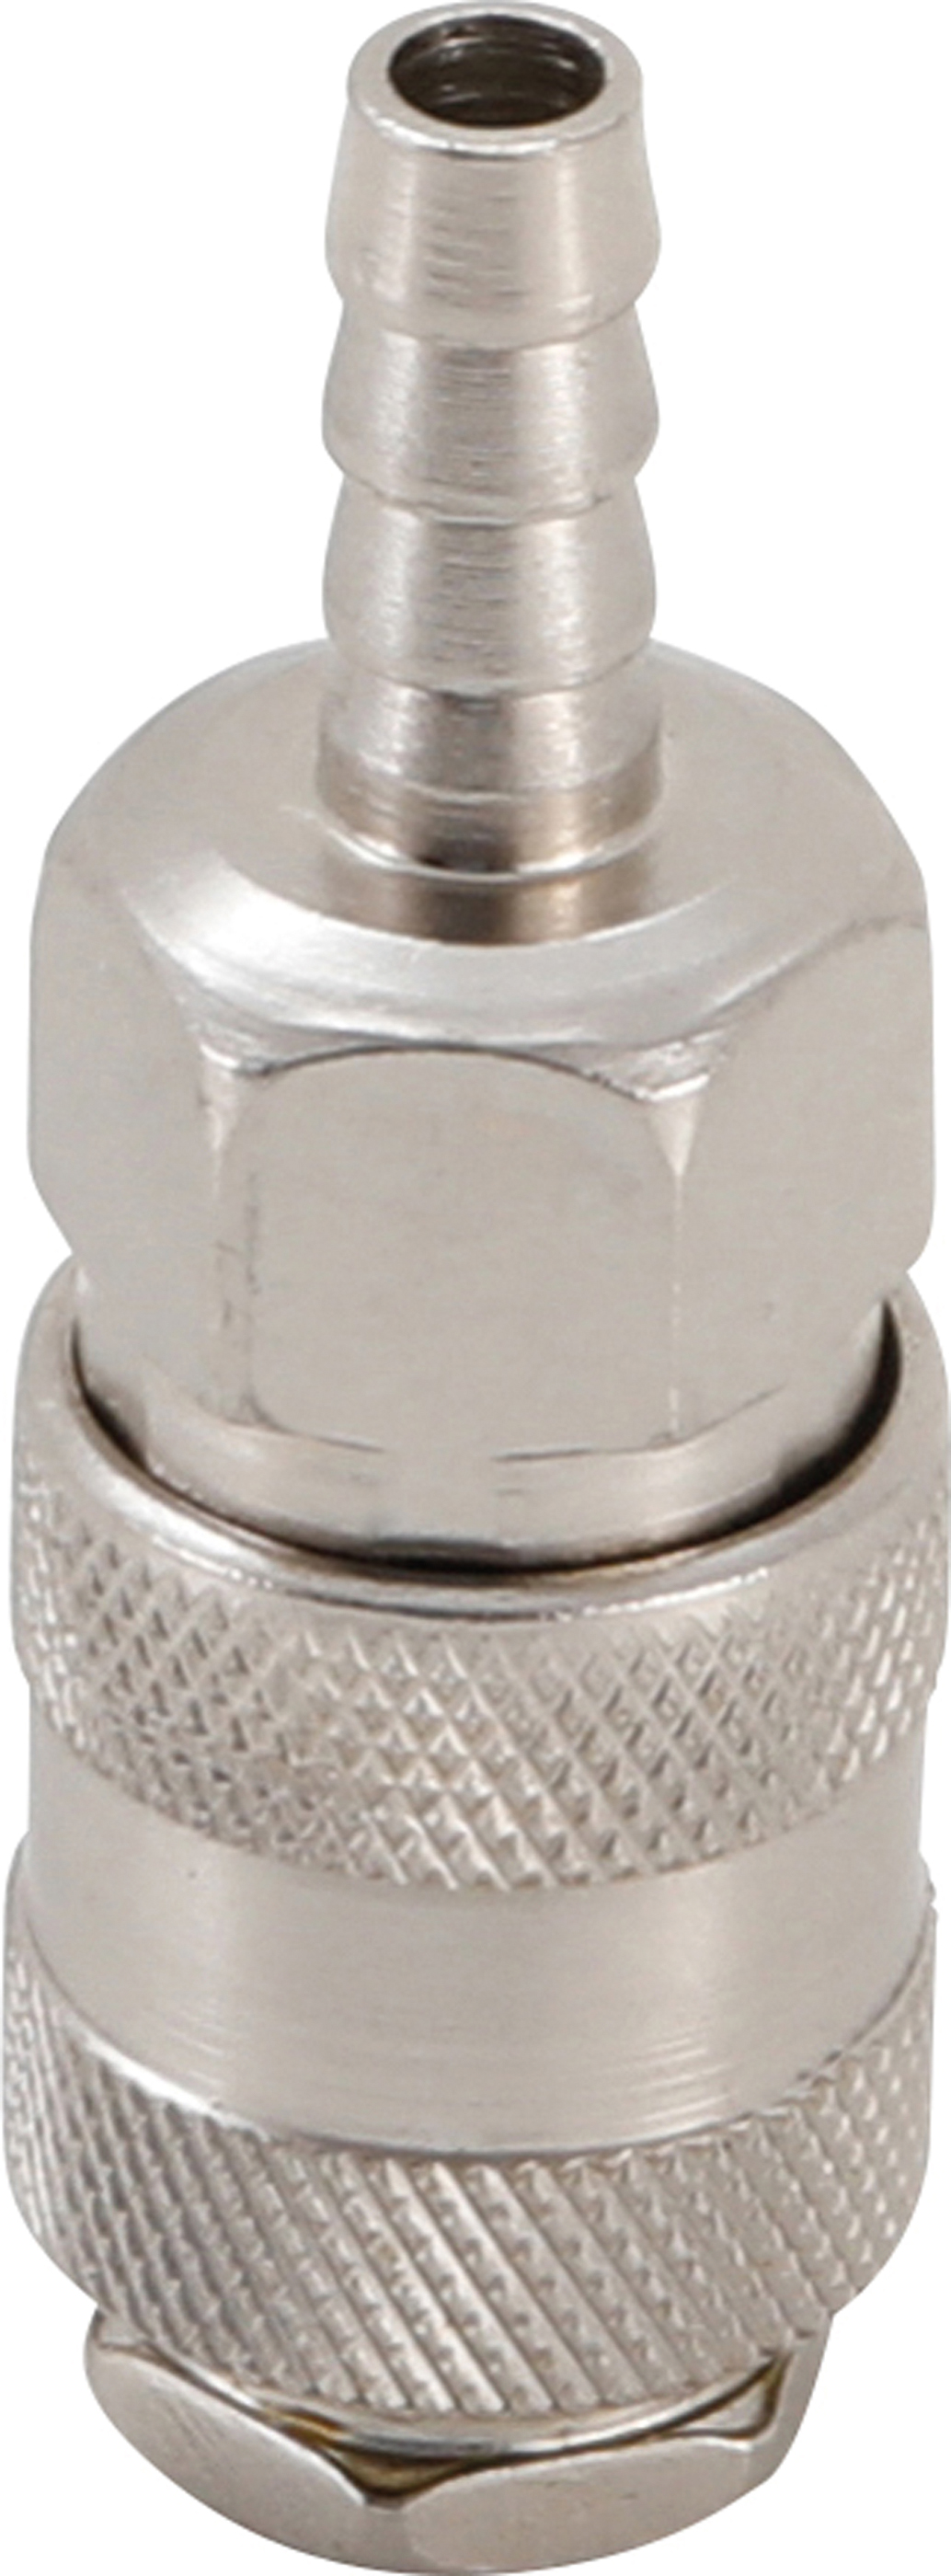 BGS Druckluft-Schnellkupplung mit 8 mm Schlauchanschluss